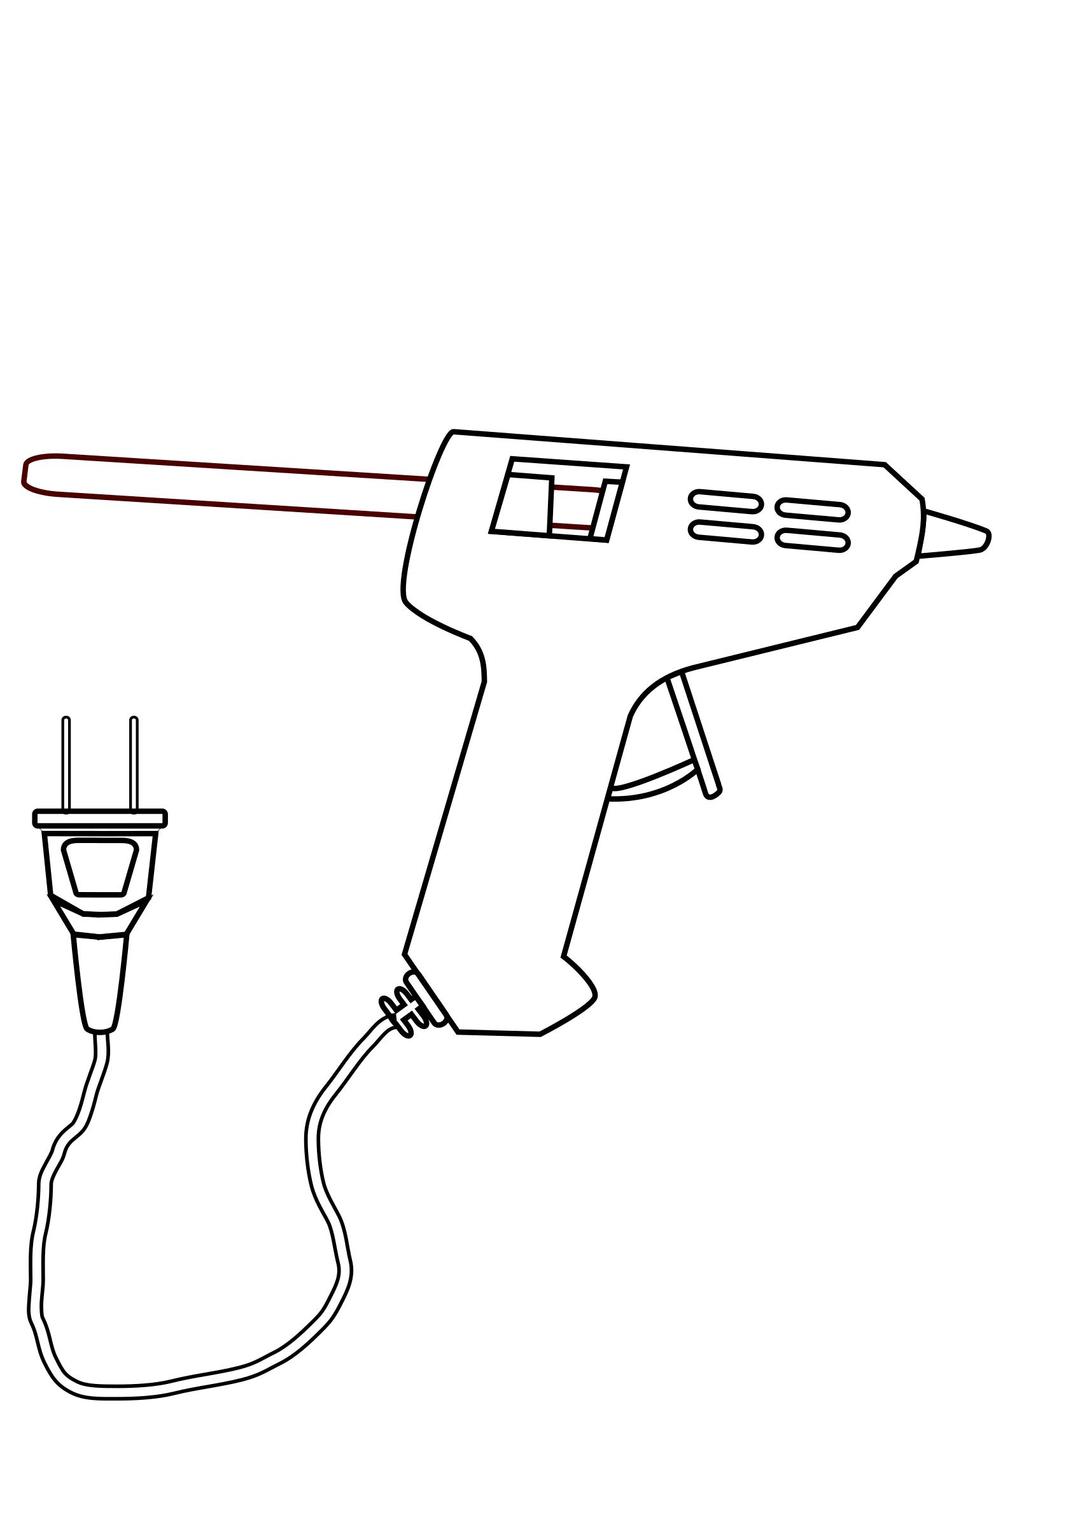 tool hot glue gun drawing coloring png transparent